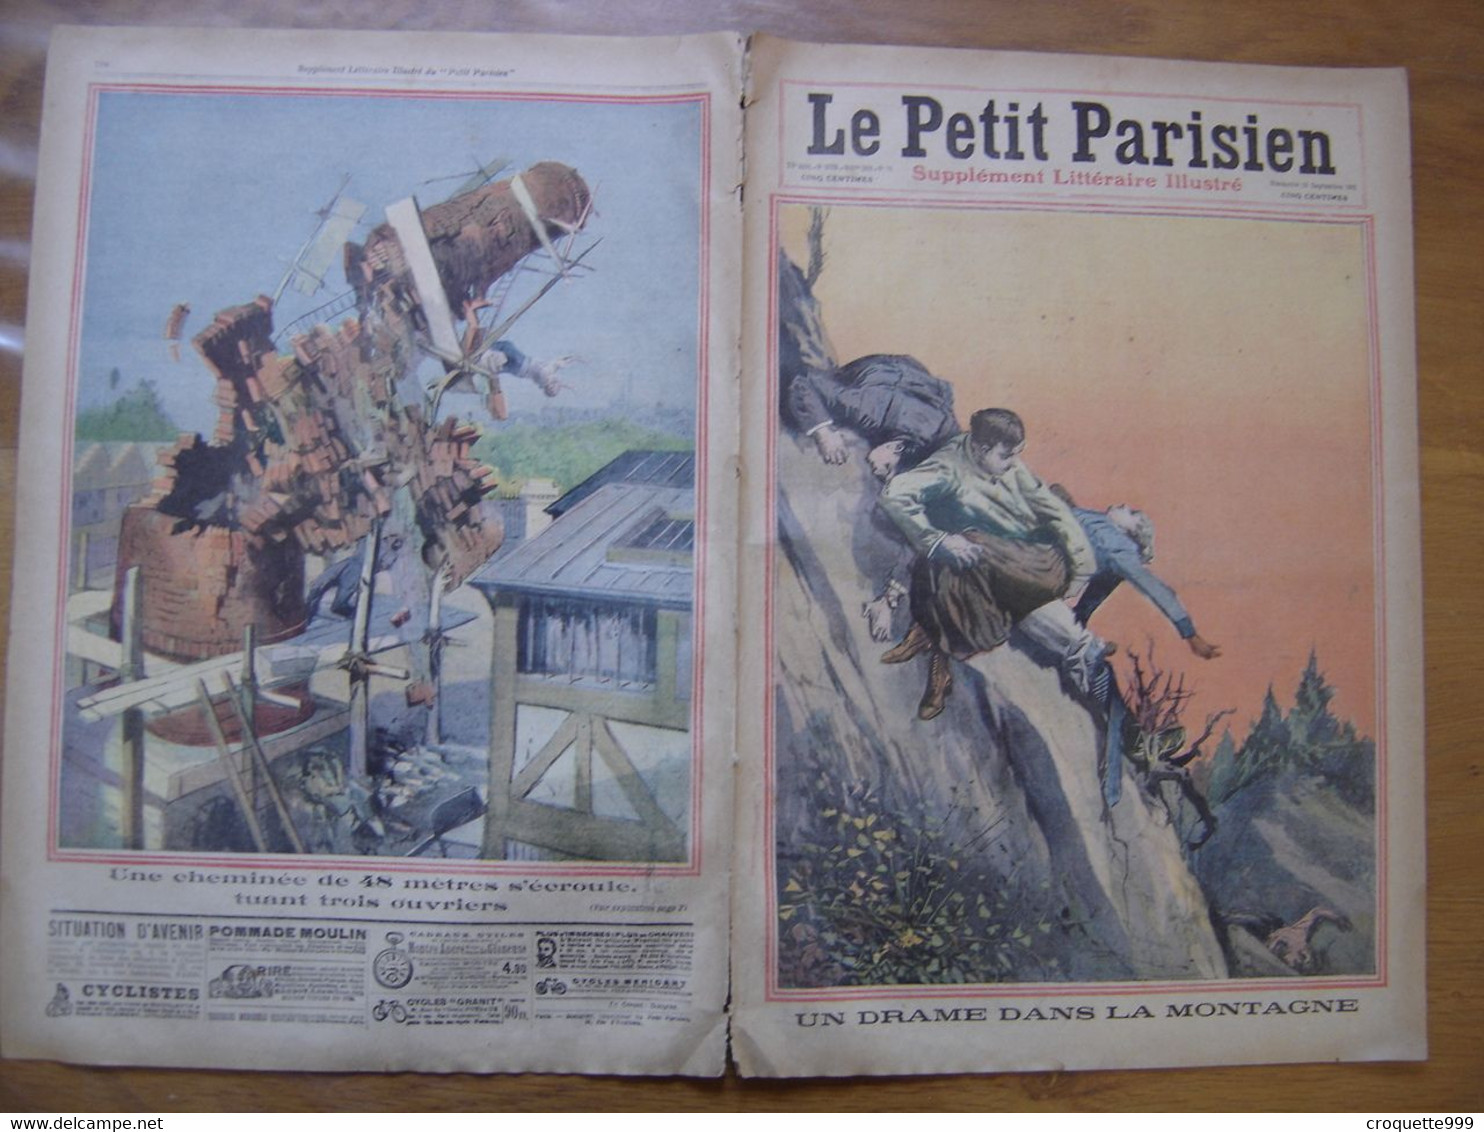 1911 PETIT PARISIEN ILLUSTRE 1179 DRAME DANS LA MONTAGNE UNE CHEMINEE DE 48 METRES - Le Petit Parisien